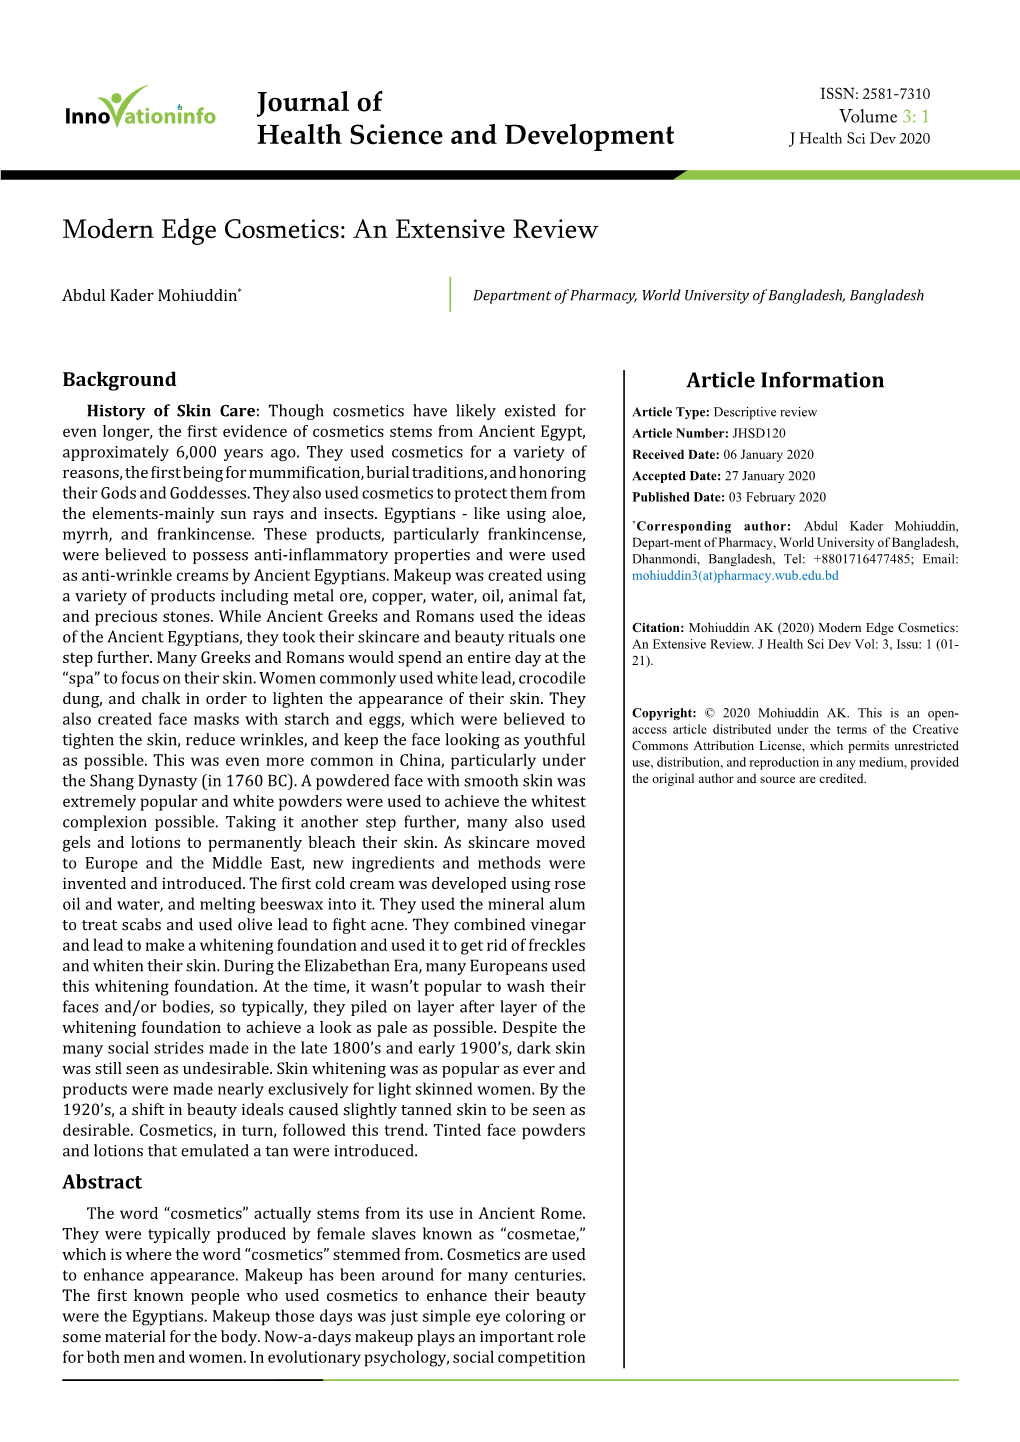 Modern Edge Cosmetics: an Extensive Review